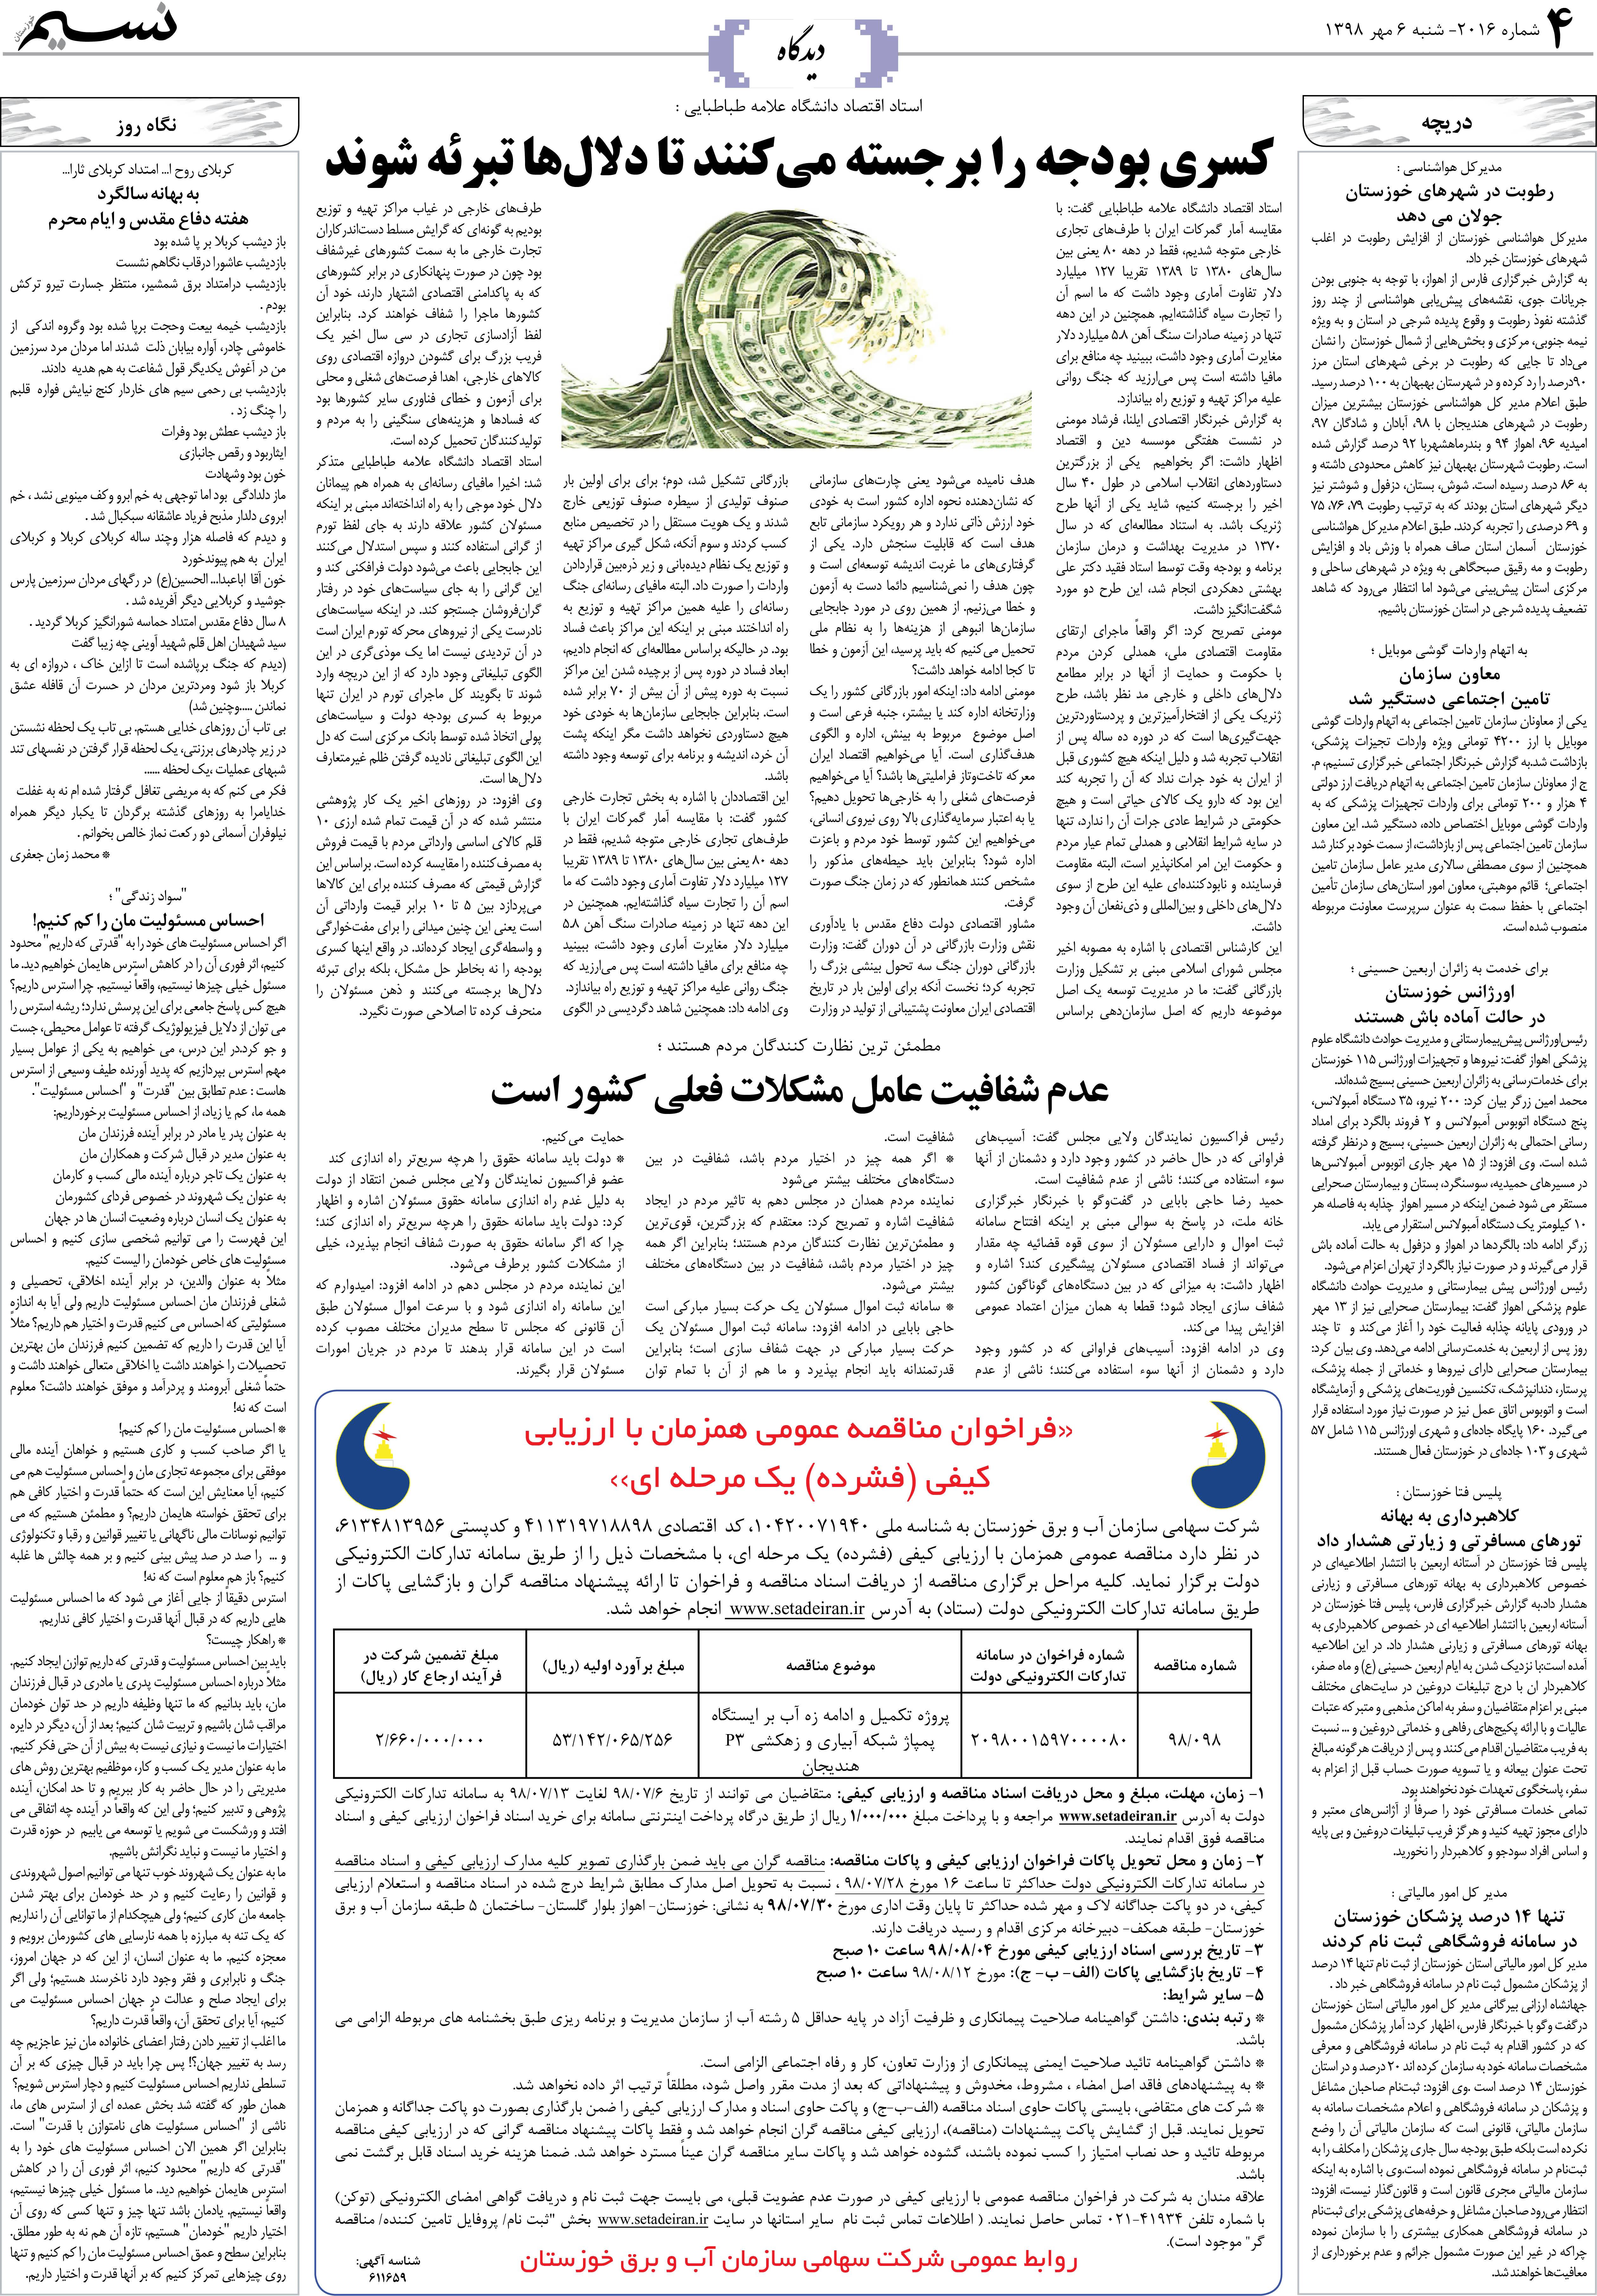 صفحه دیدگاه روزنامه نسیم شماره 2016